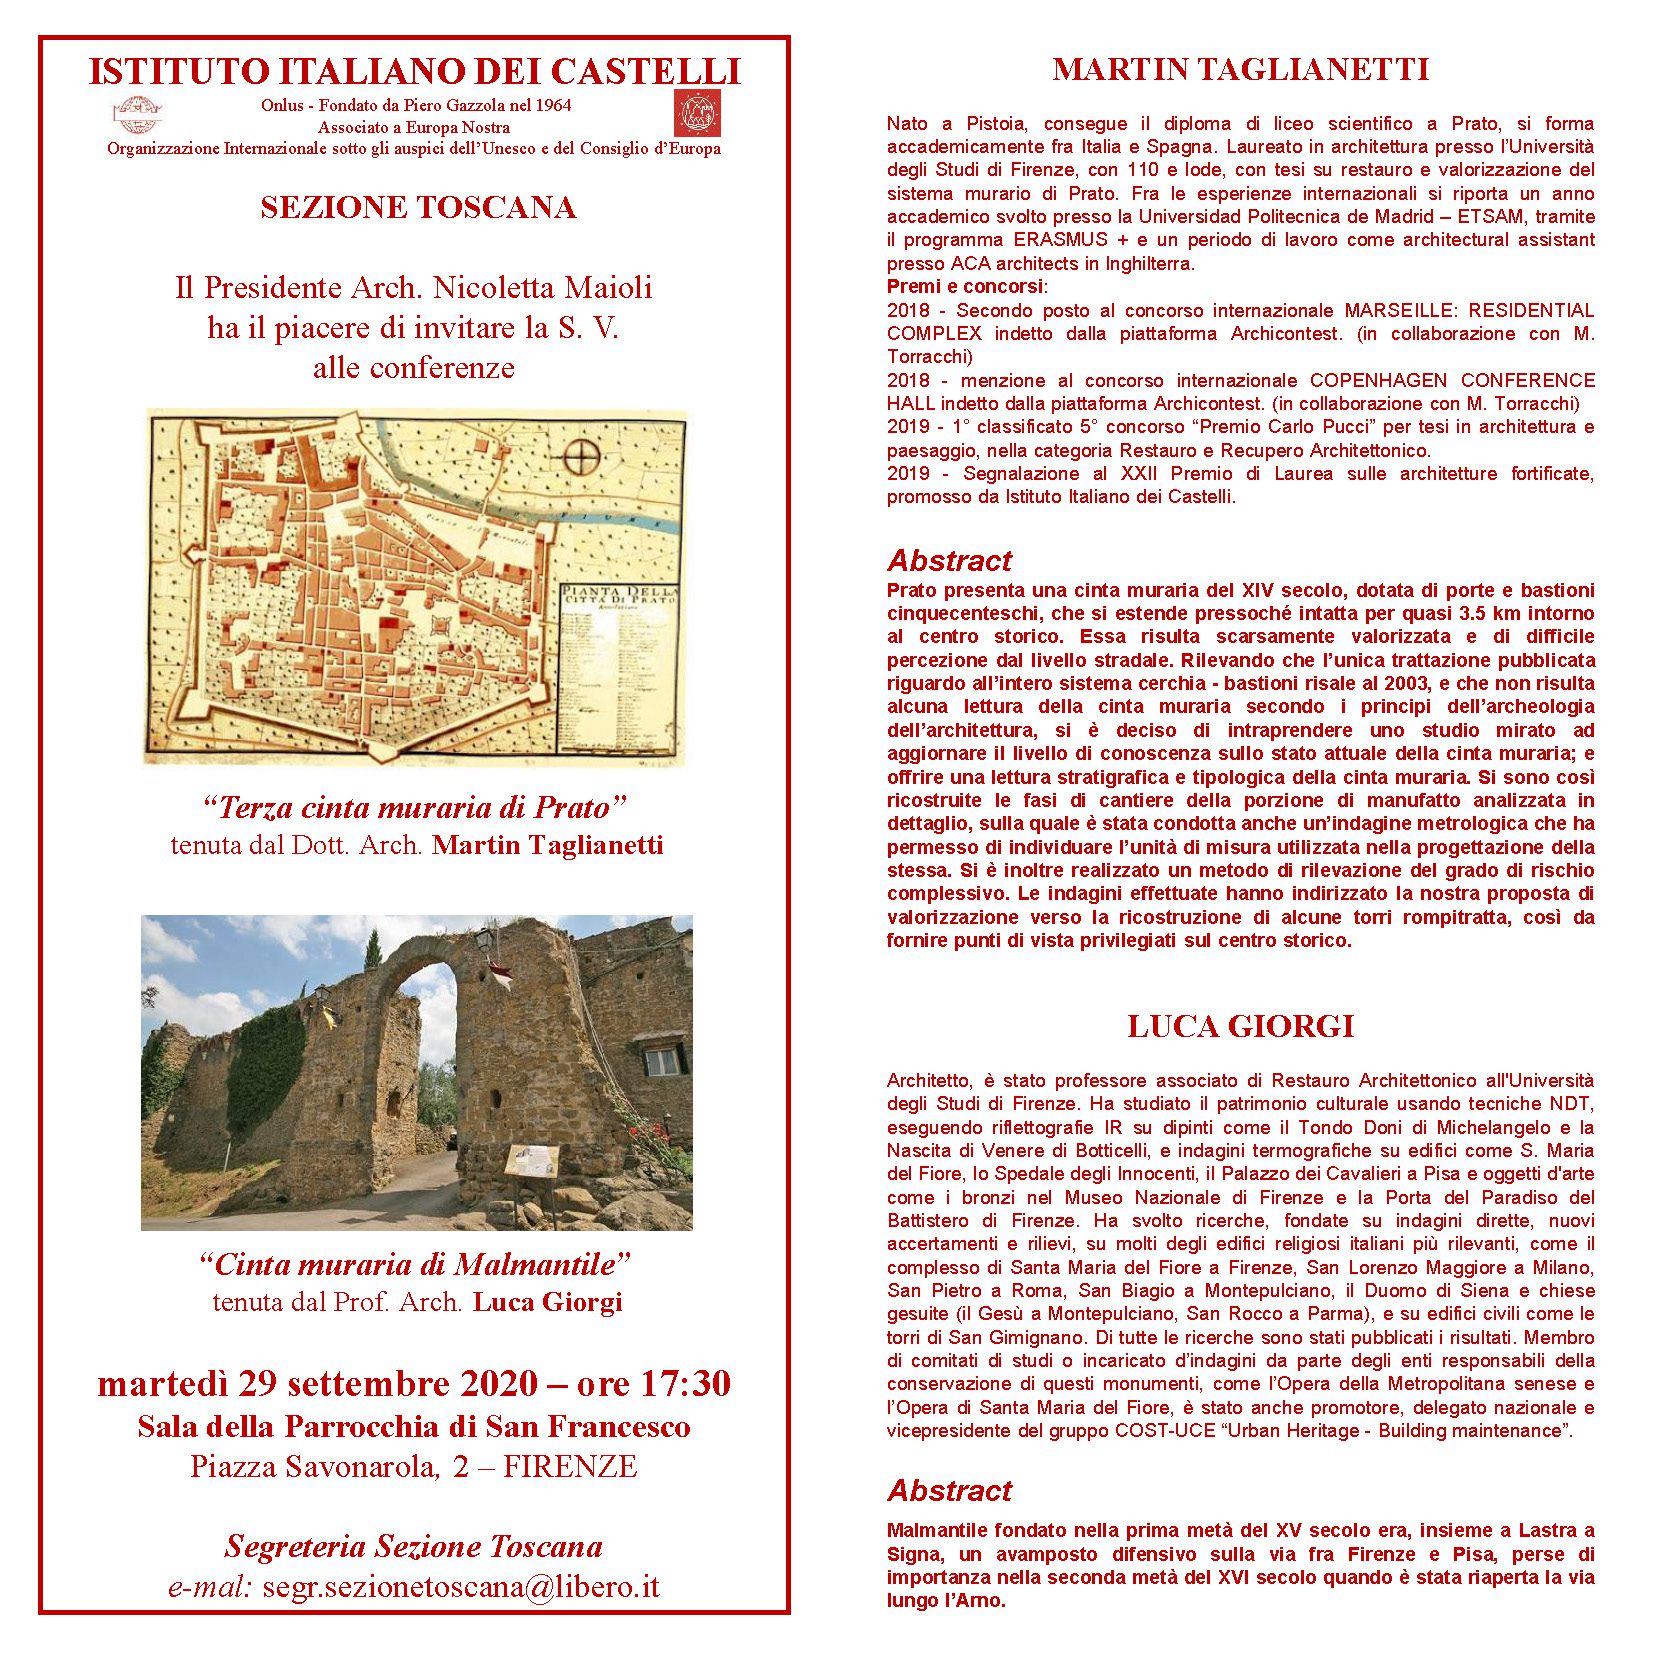 Sezione Toscana – Conferenze: “Terza cinta muraria di Prato” e “Cinta muraria di Malmantile”